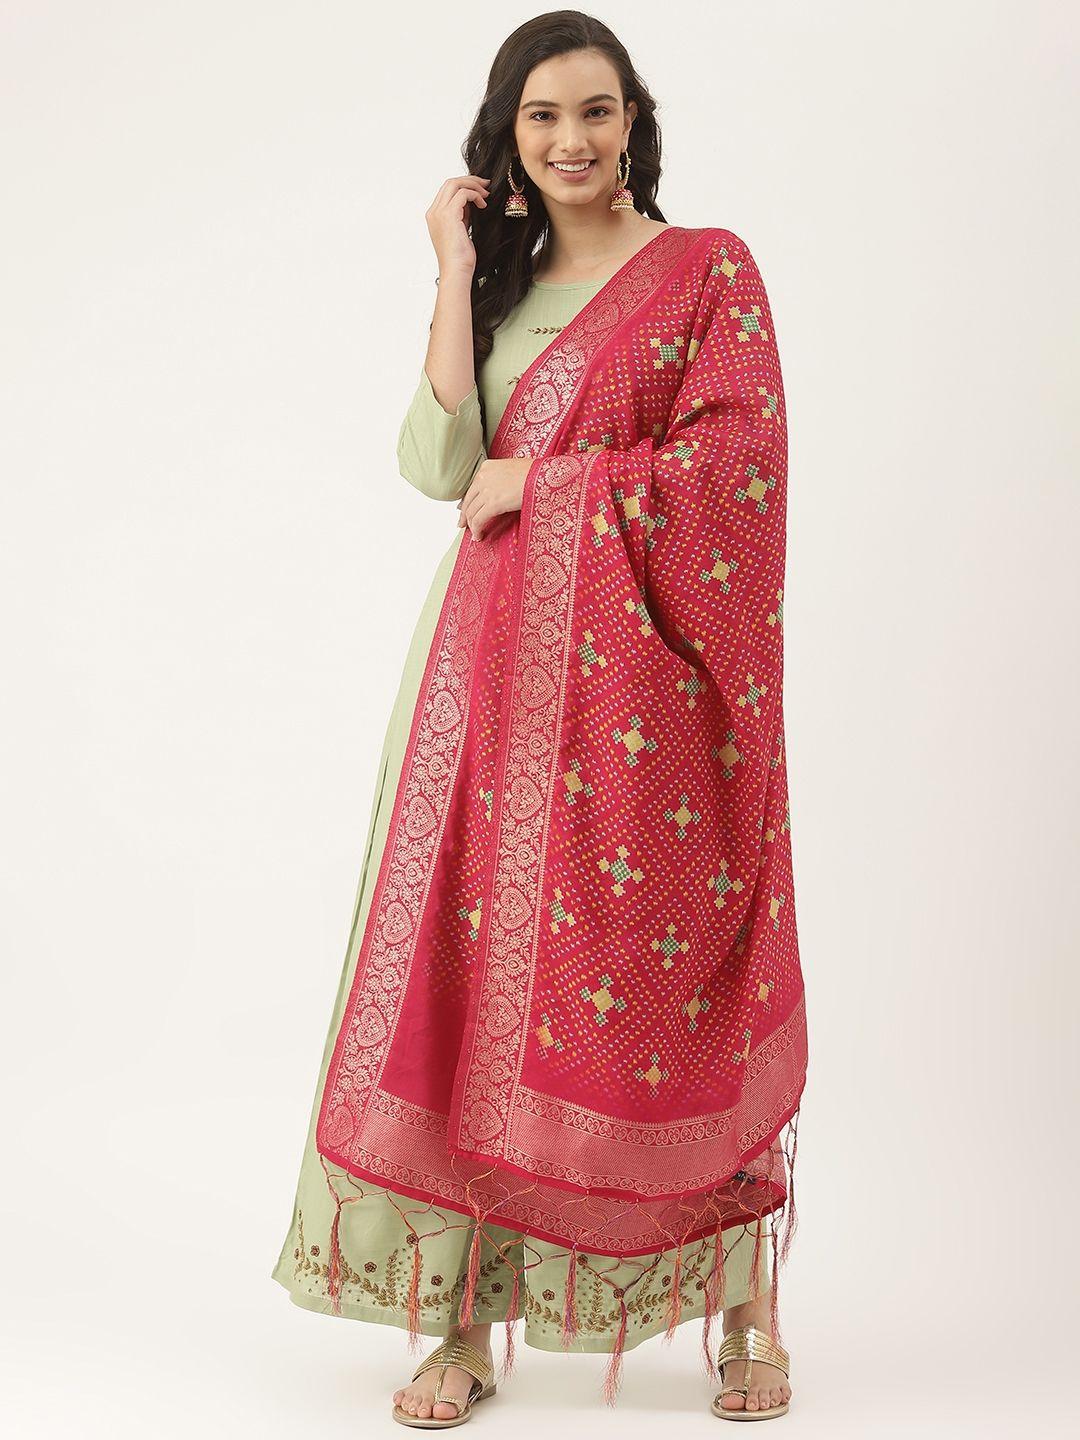 vaaba pink ethnic motifs printed bandhani dupatta with zari details